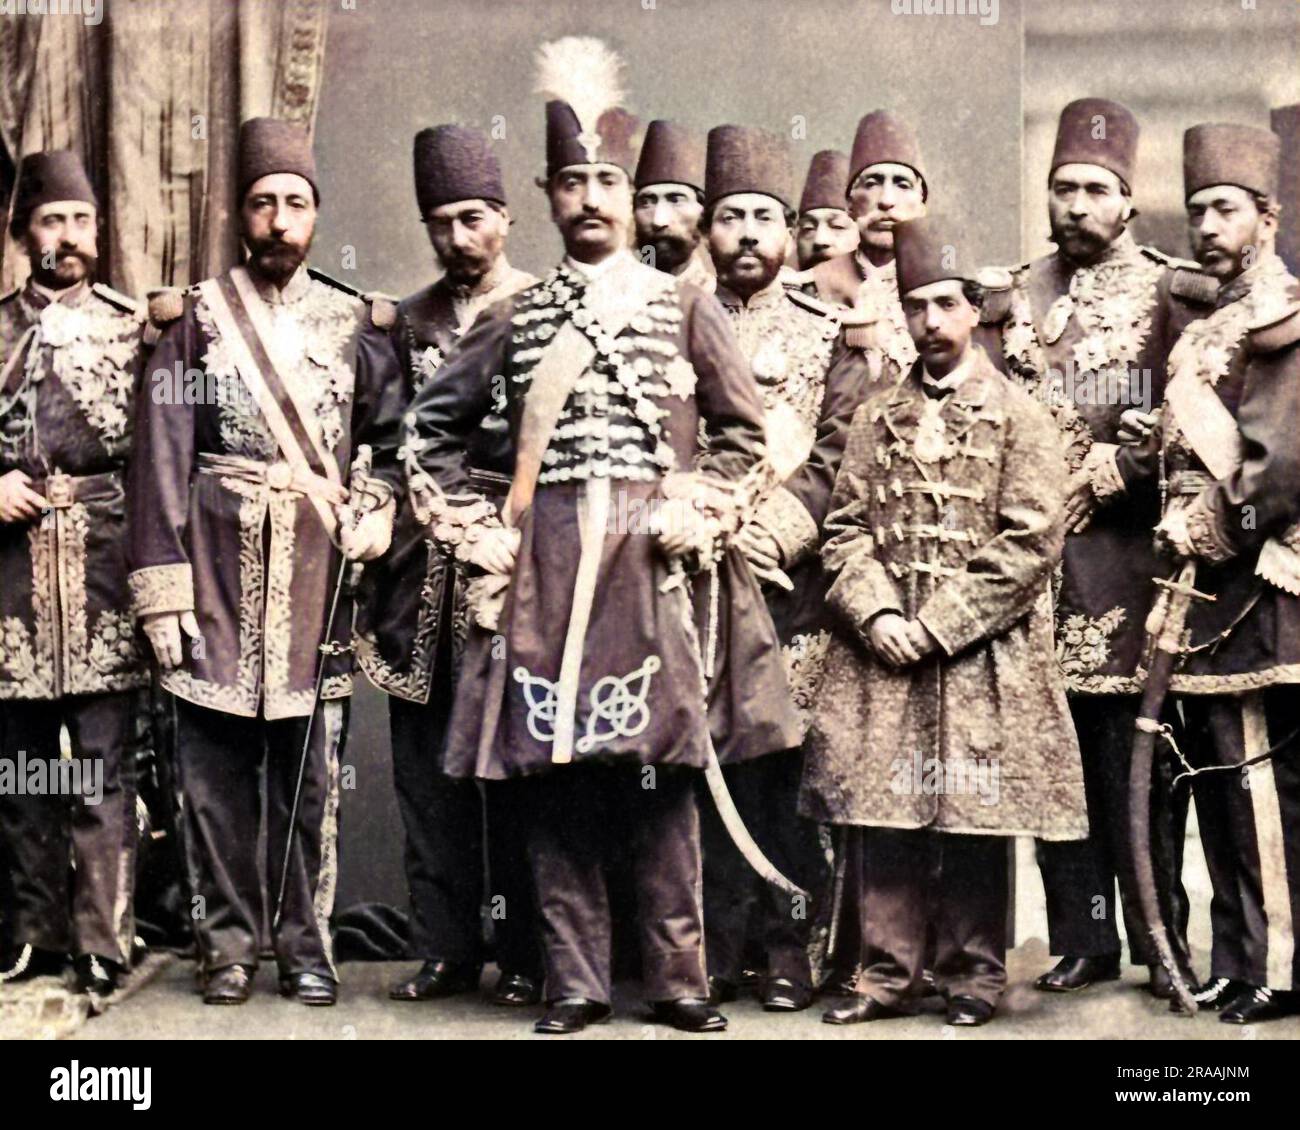 Gruppenfoto von Würdenträgern bei einem Besuch des britischen Schahs von Persien, Nasr-Ed-DIN (Nasser al-DIN Shah Qajar) (1831-1896), hier im Zentrum zu sehen. Datum: 1873 Stockfoto